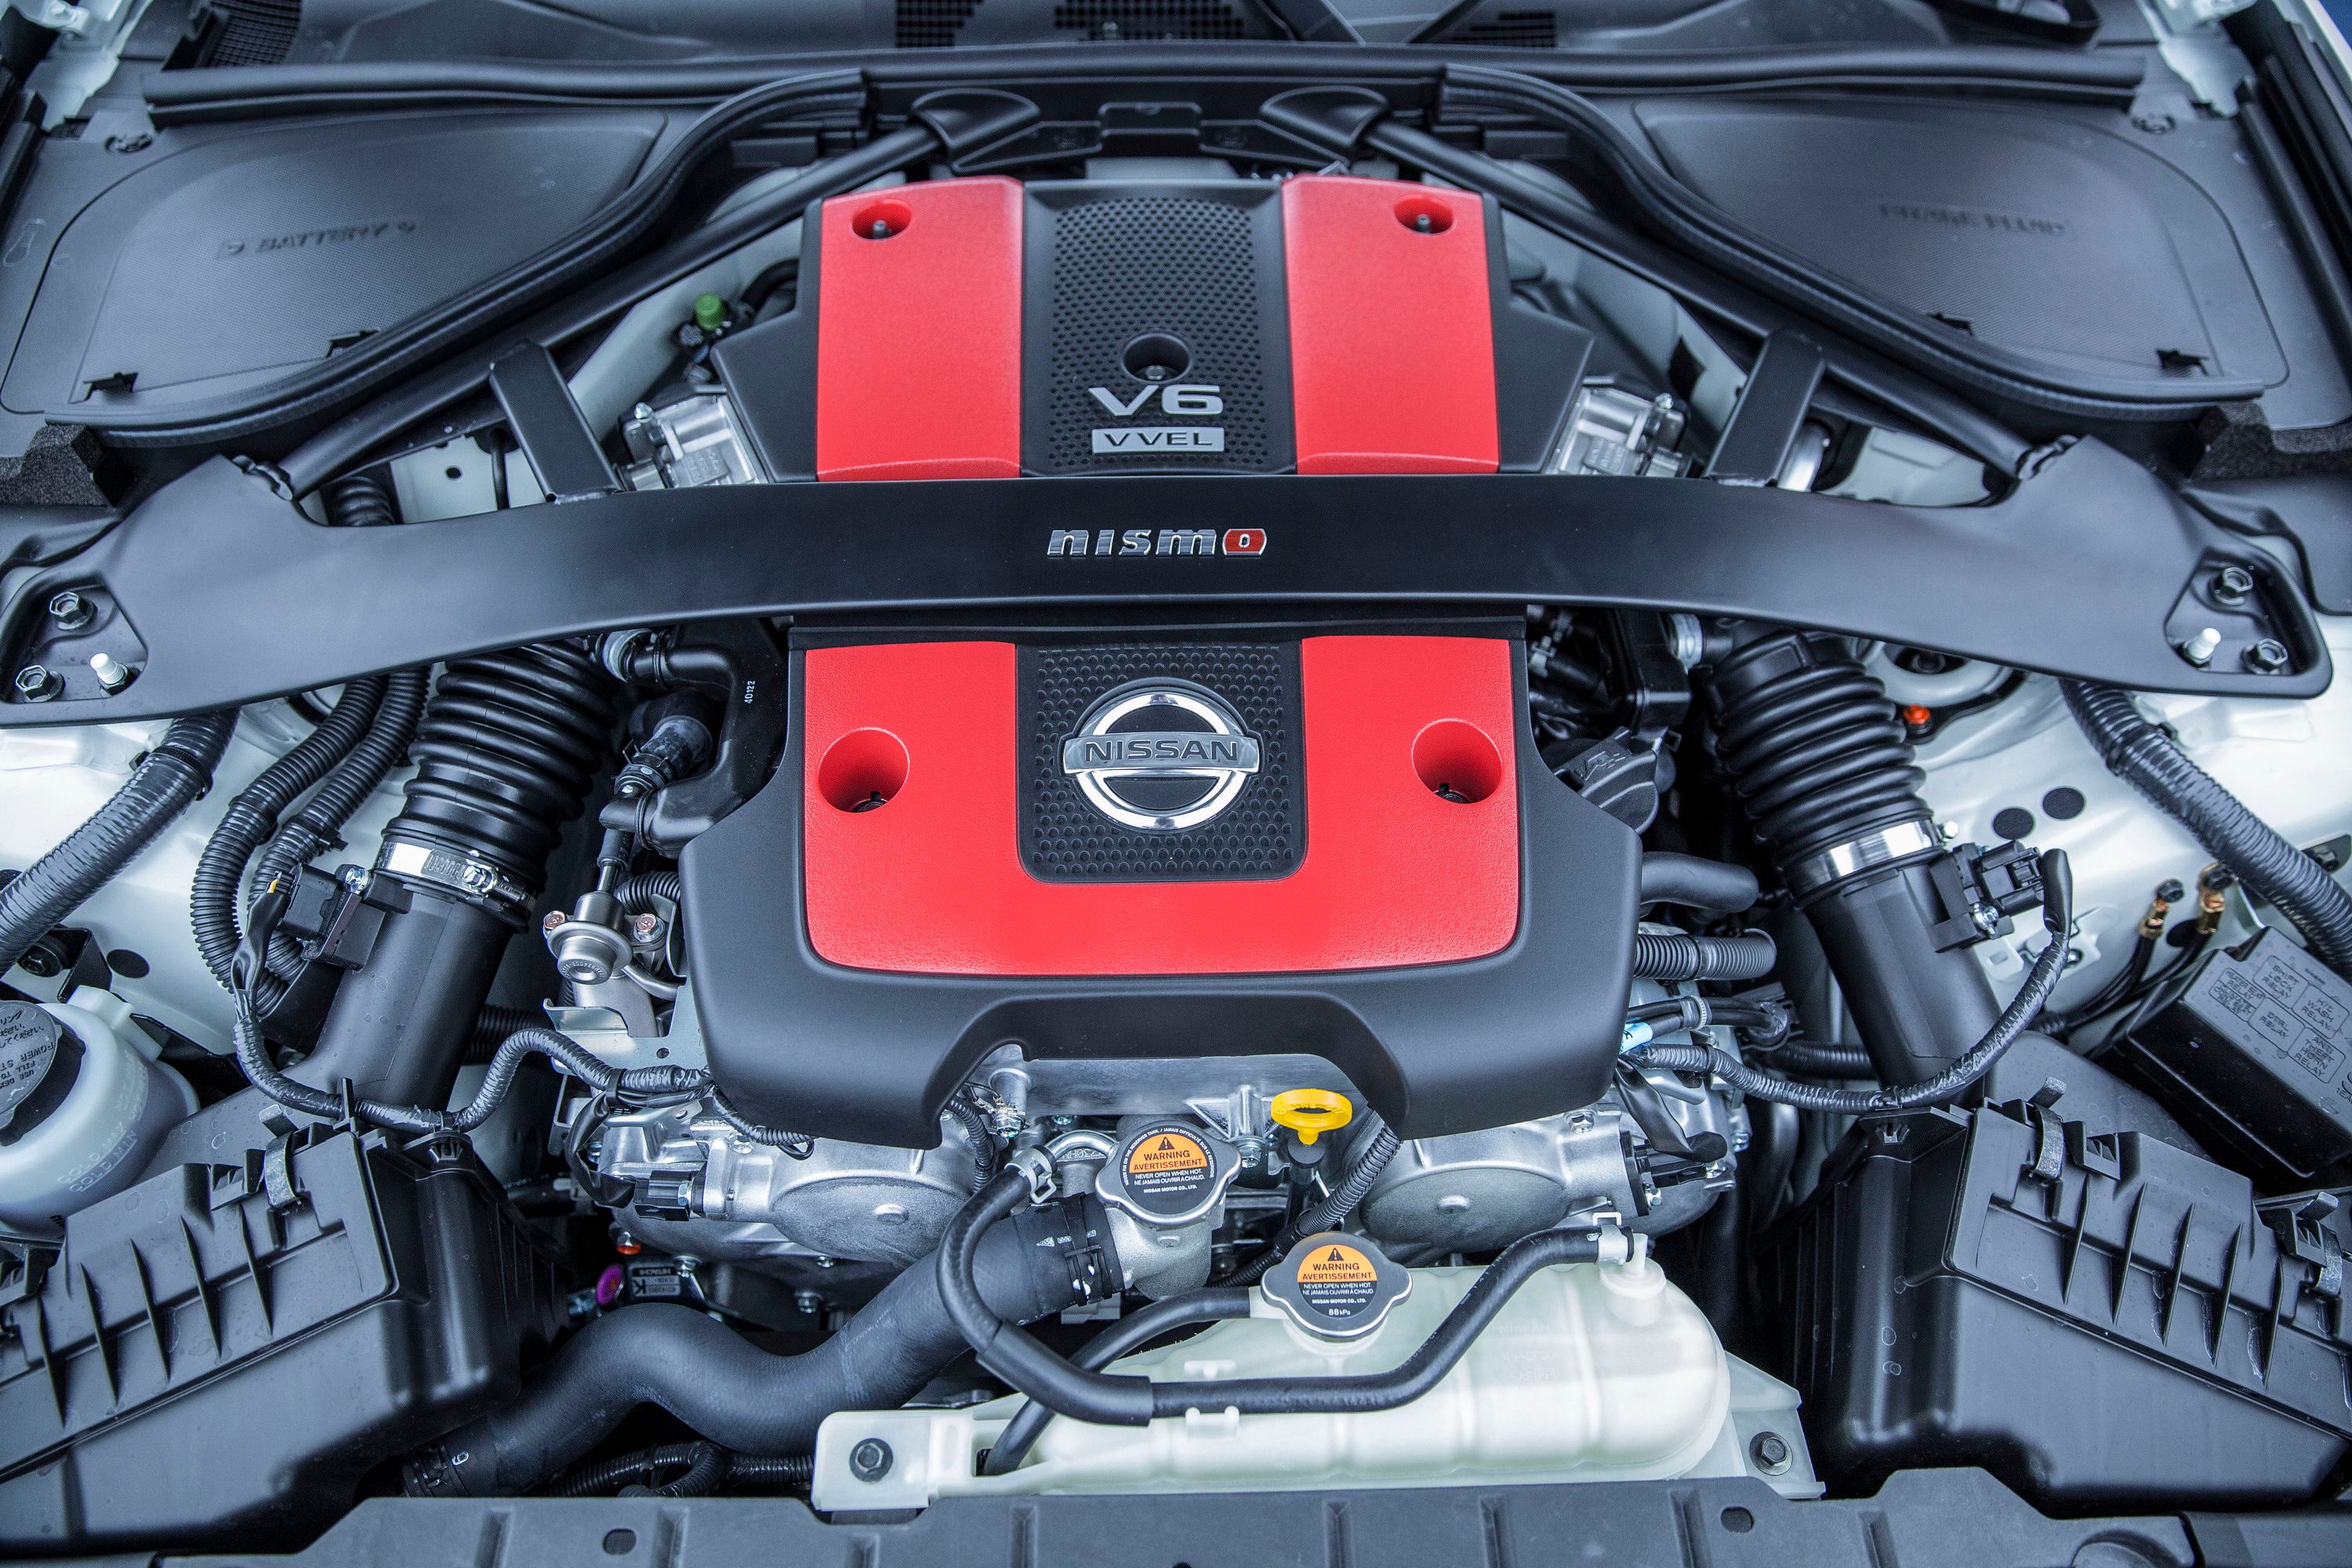 2015 - 2017 Nissan 370Z Nismo